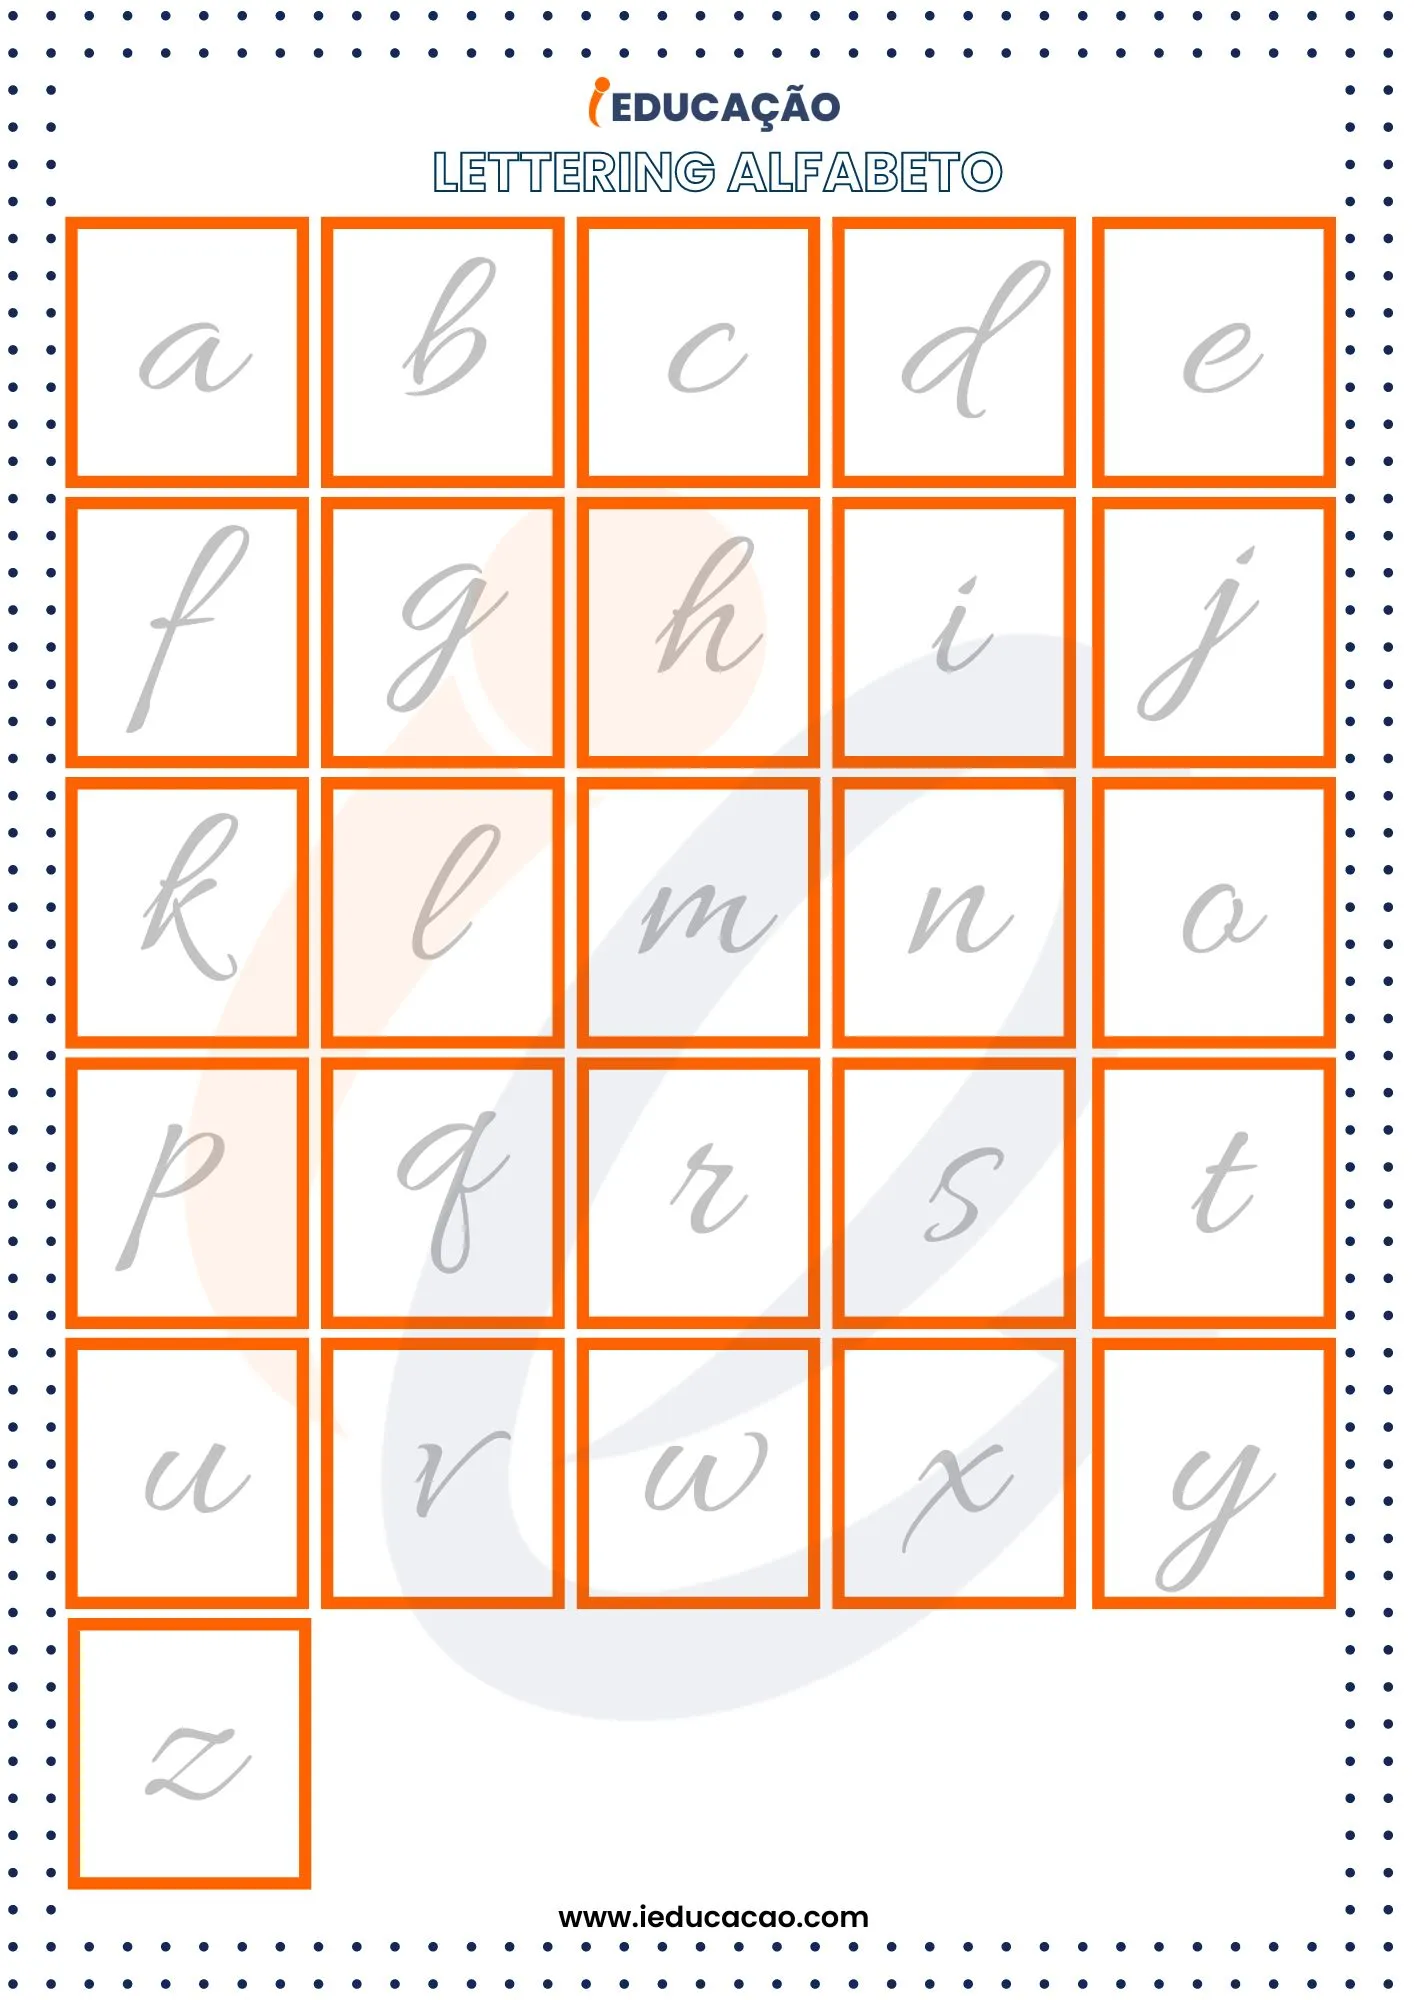 Lettering Alfabeto- alfabeto lettering para treinar